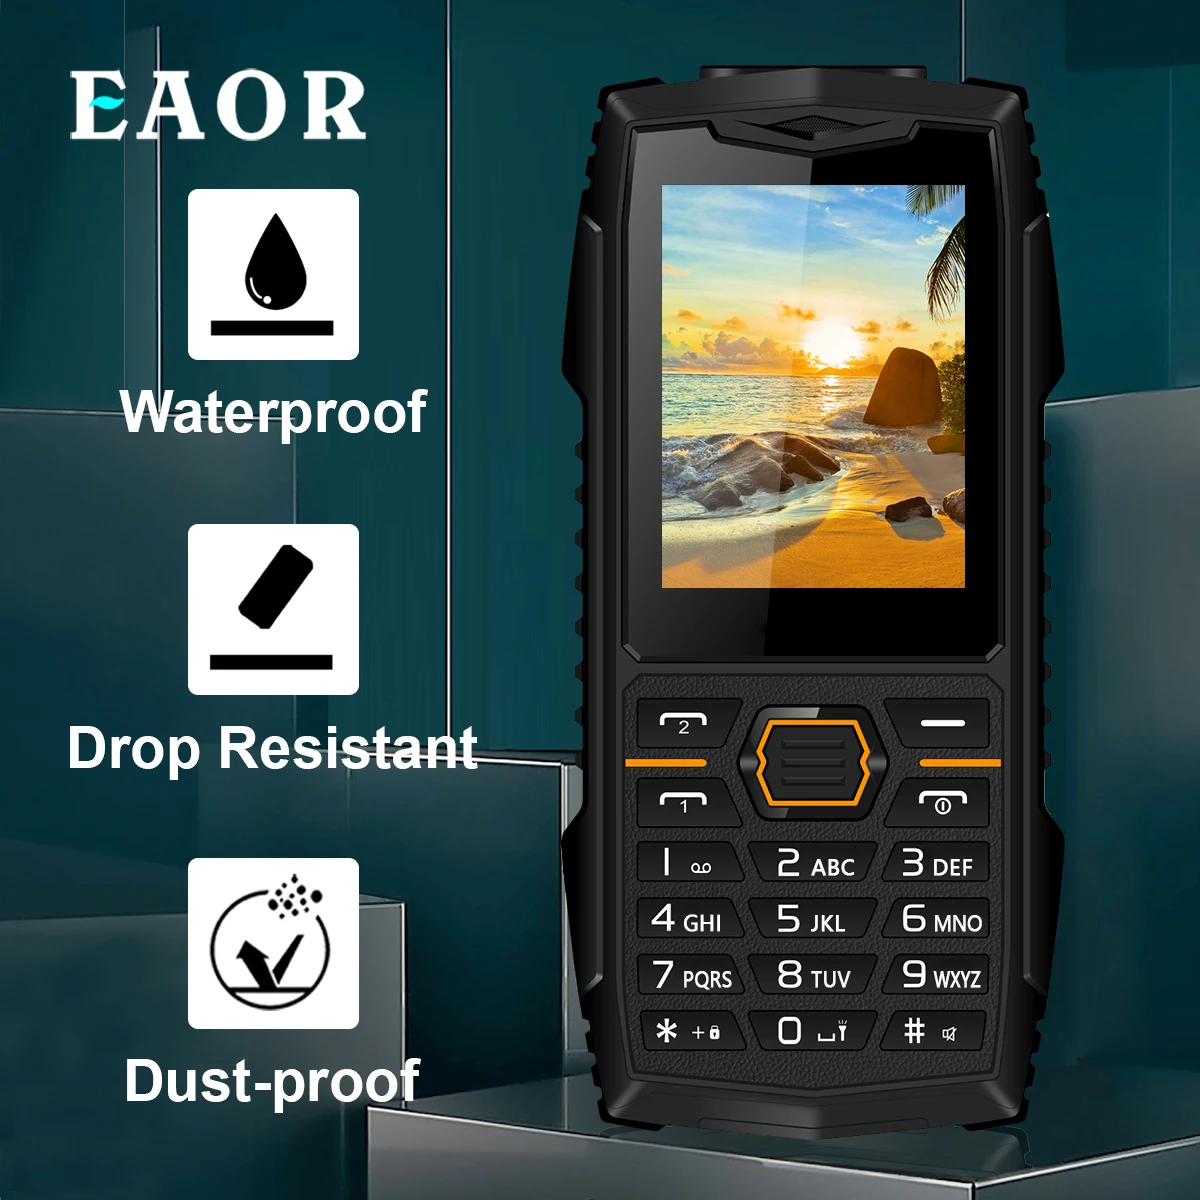 

Прочный телефон EAOR 2G, уличный, IP68, с защитой от падения, с нажимными кнопками, 2,4 дюйма, 2000 мА · ч